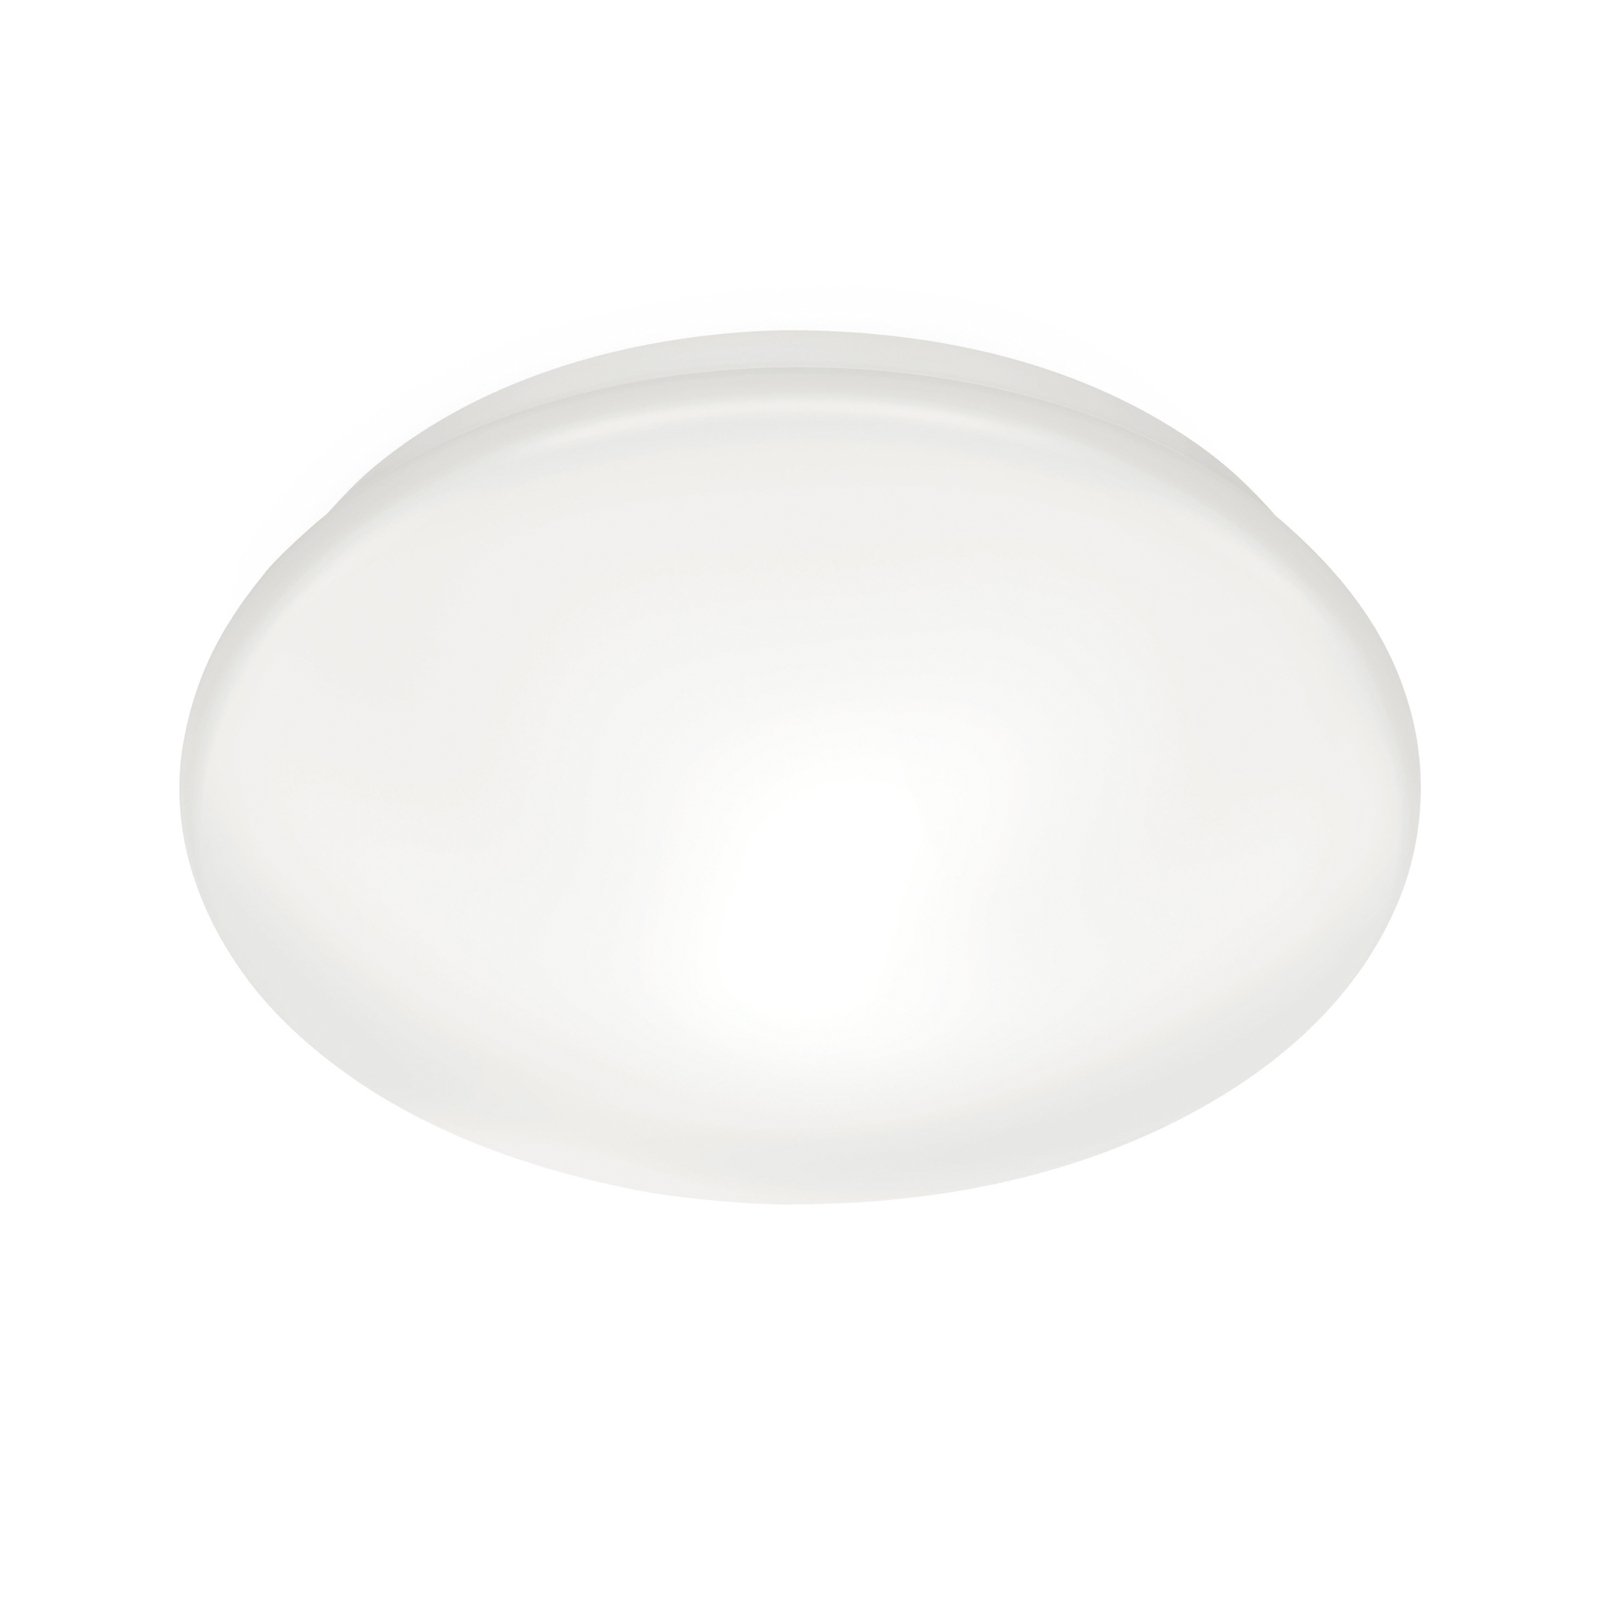 WiZ Adria LED stropní světlo, 17 W, teplá bílá